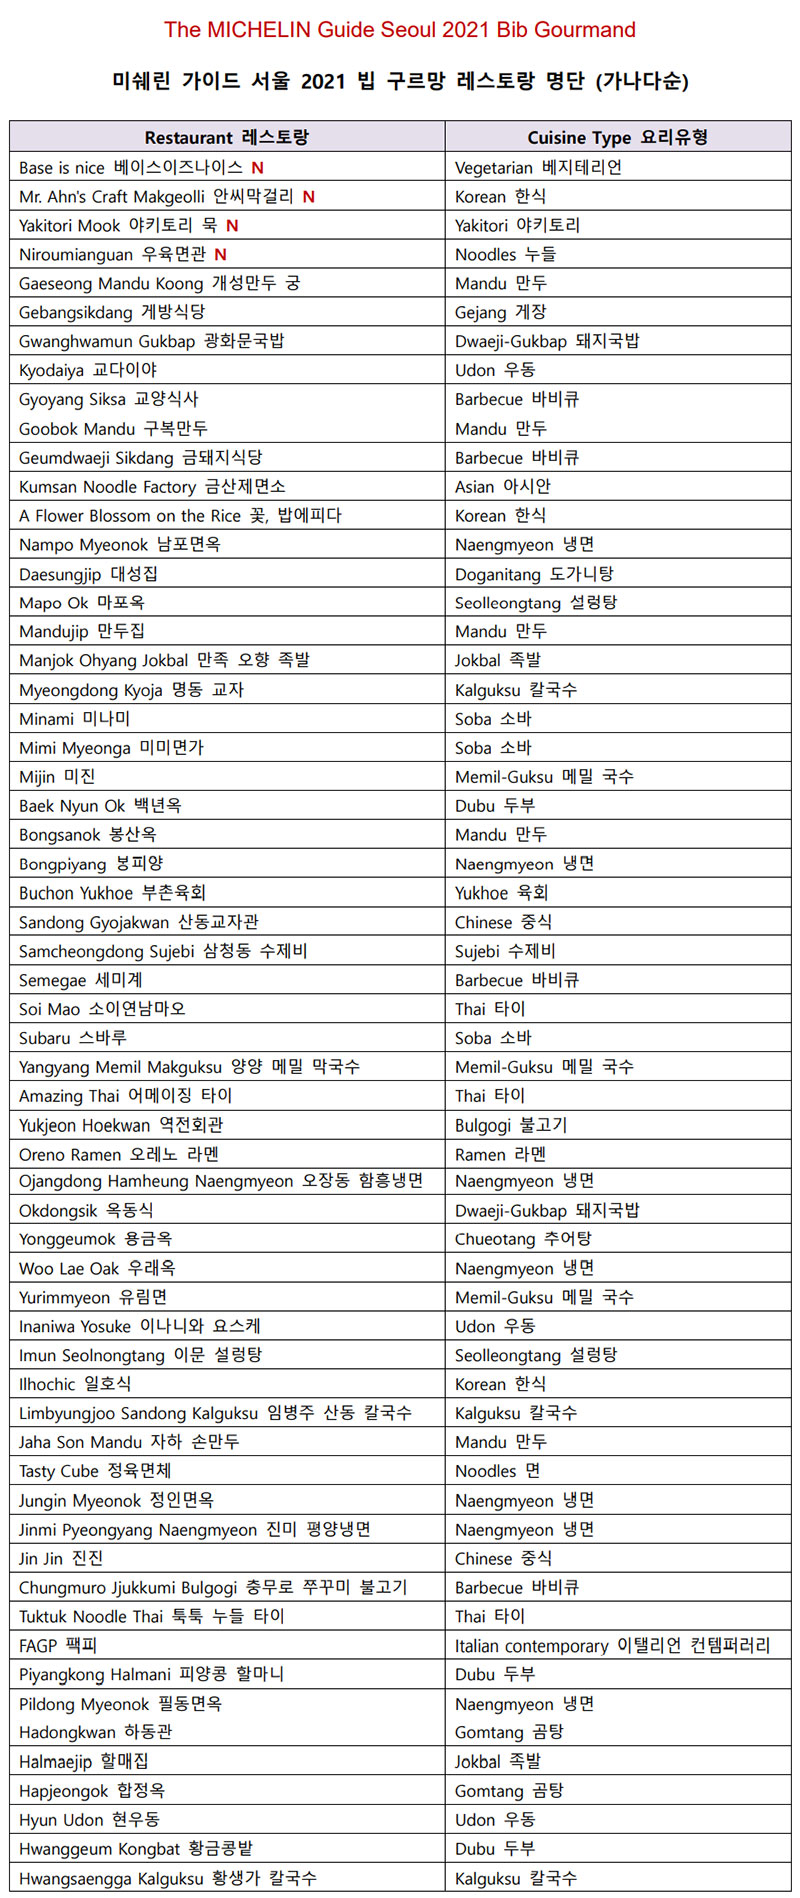 미쉐린 가이드 서울 2021, 60개 빕 구르망(Bib Gourmand) 수상자 목록